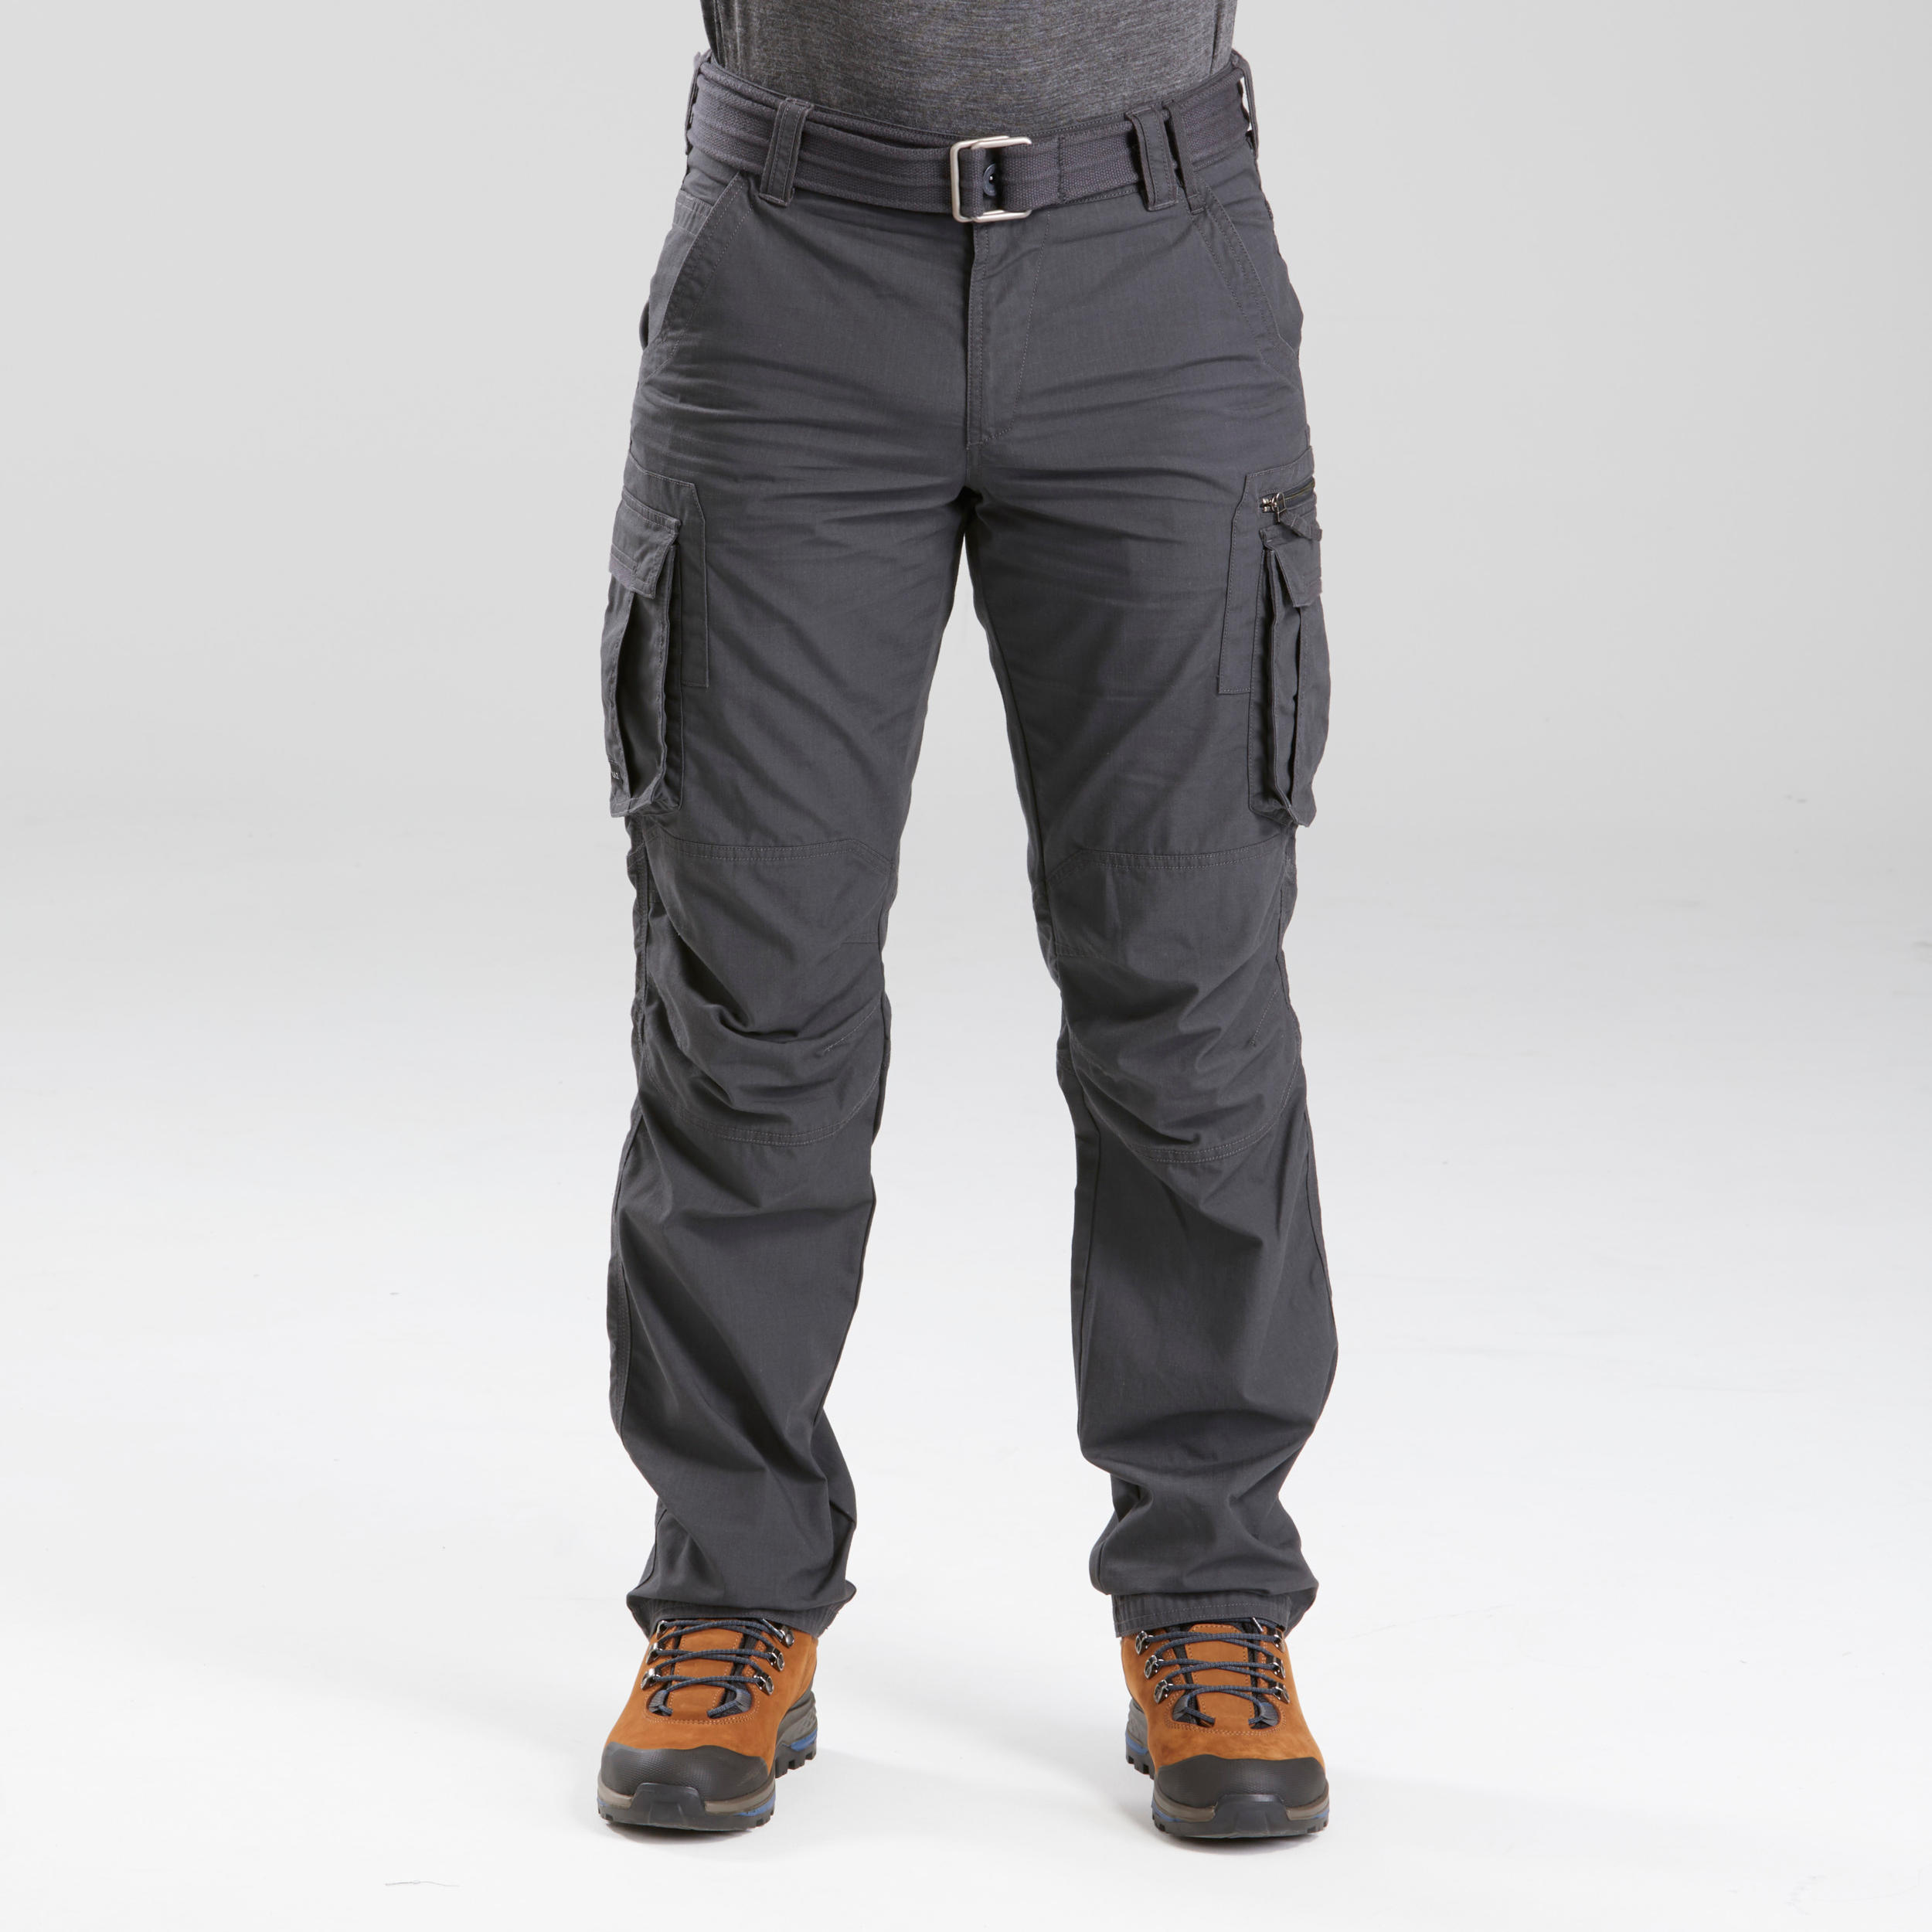 8848 Altitude Rendalen Pant - Men's outdoor pants | SportFits Shop